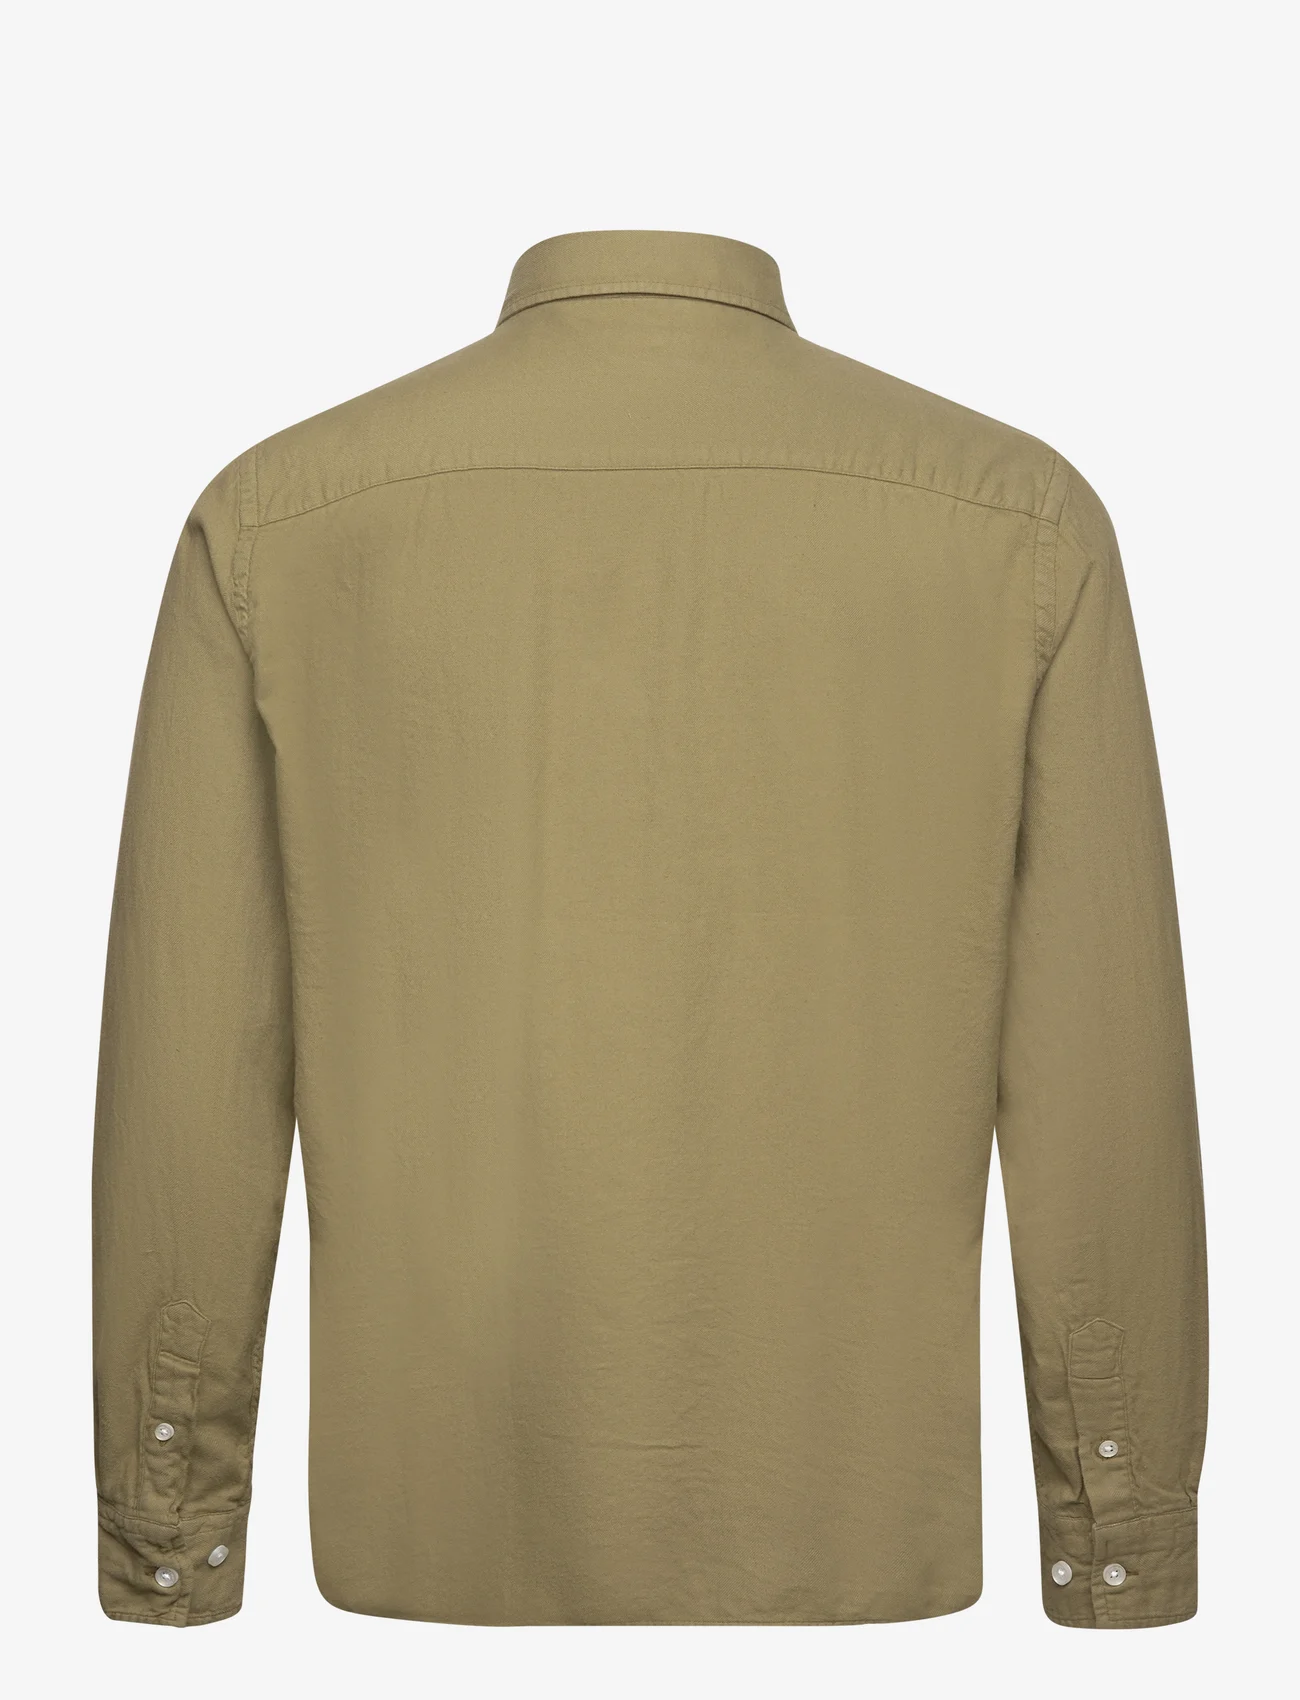 Armor Lux - Shirt Héritage - basic shirts - oliva - 1